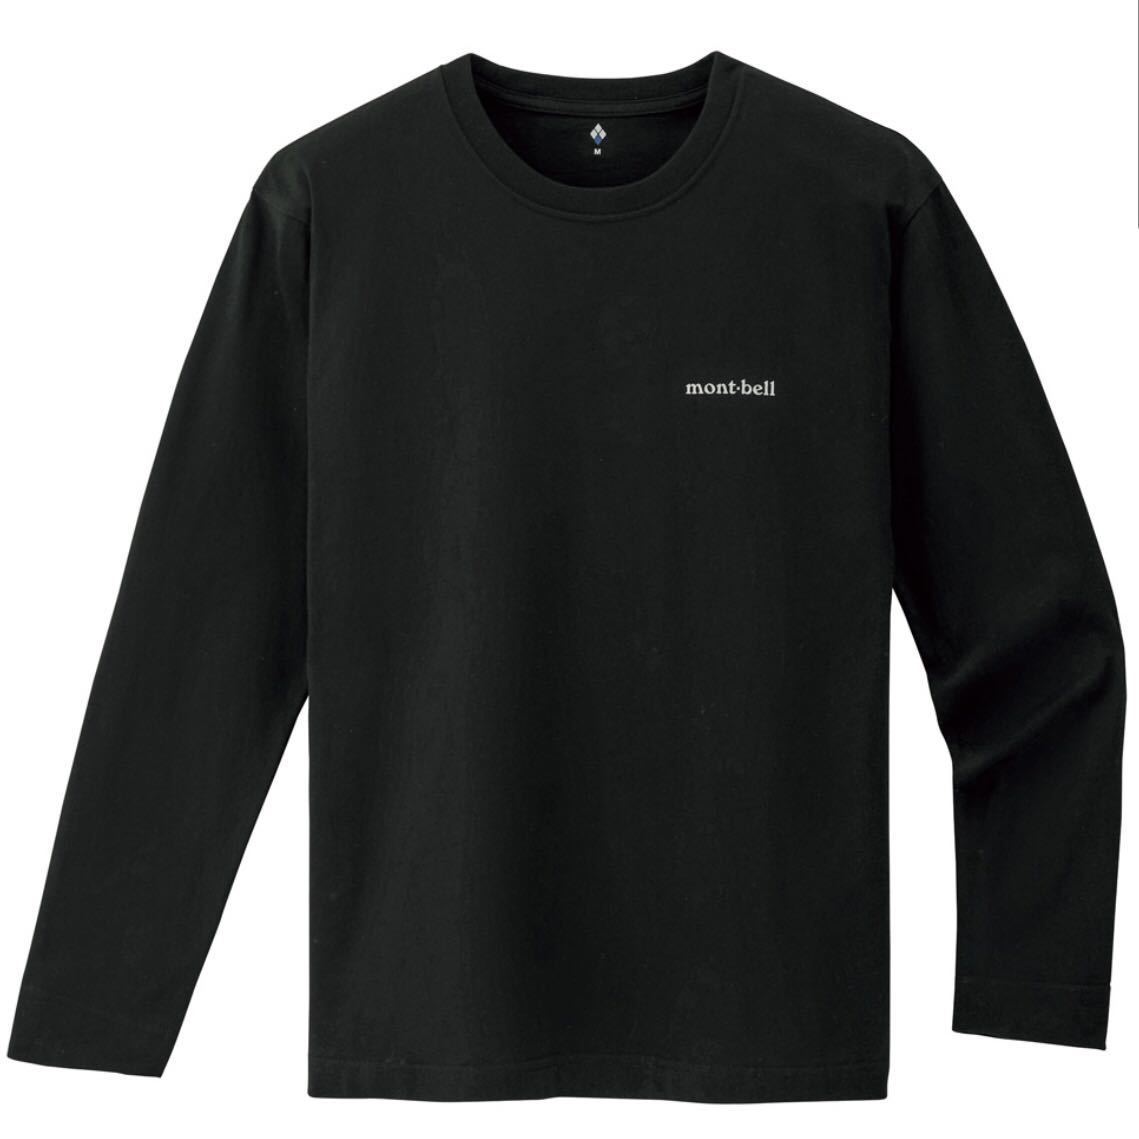 新品 montbell モンベル ペアスキンコットン Tシャツ Lサイズ ブラック 男女兼用 ロンT メンズ レディース ユニセックス アウトドア 8468_画像2